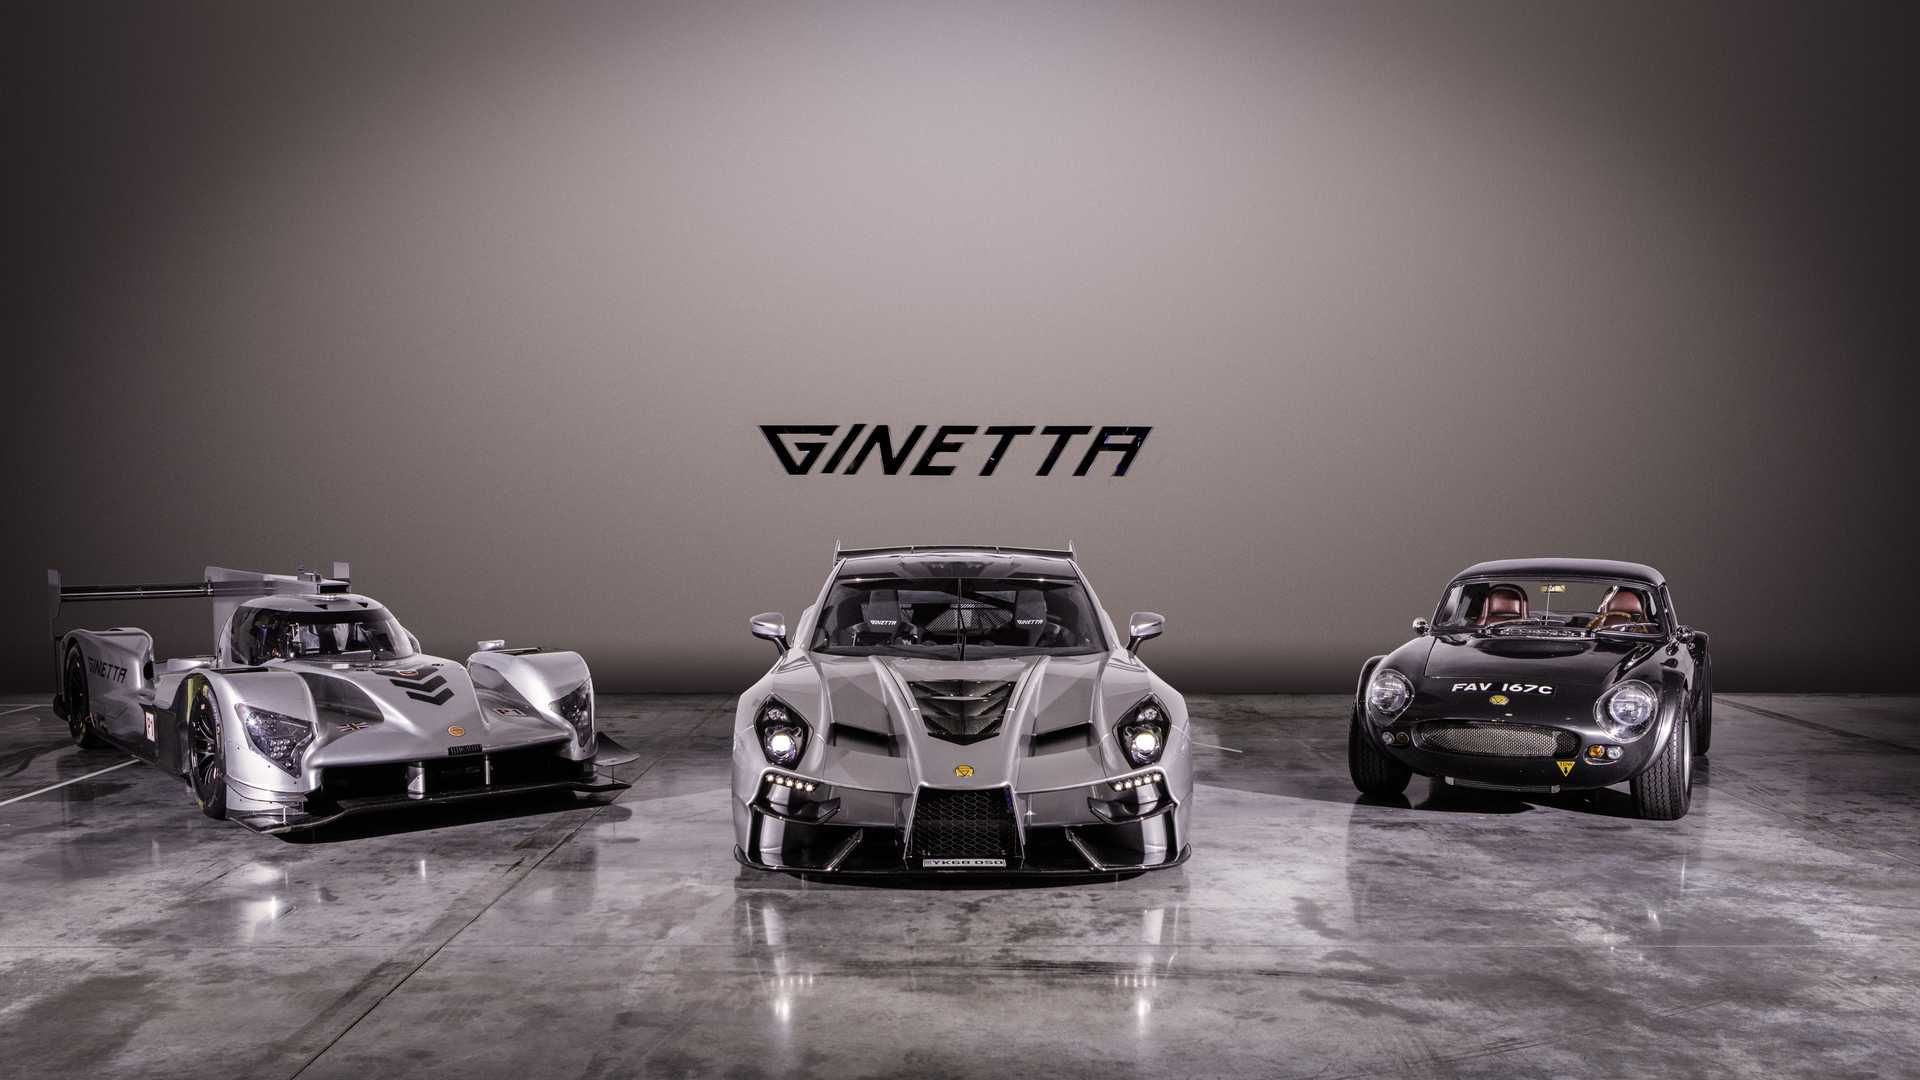 سوپر اسپرت جینتا / Ginetta supercar